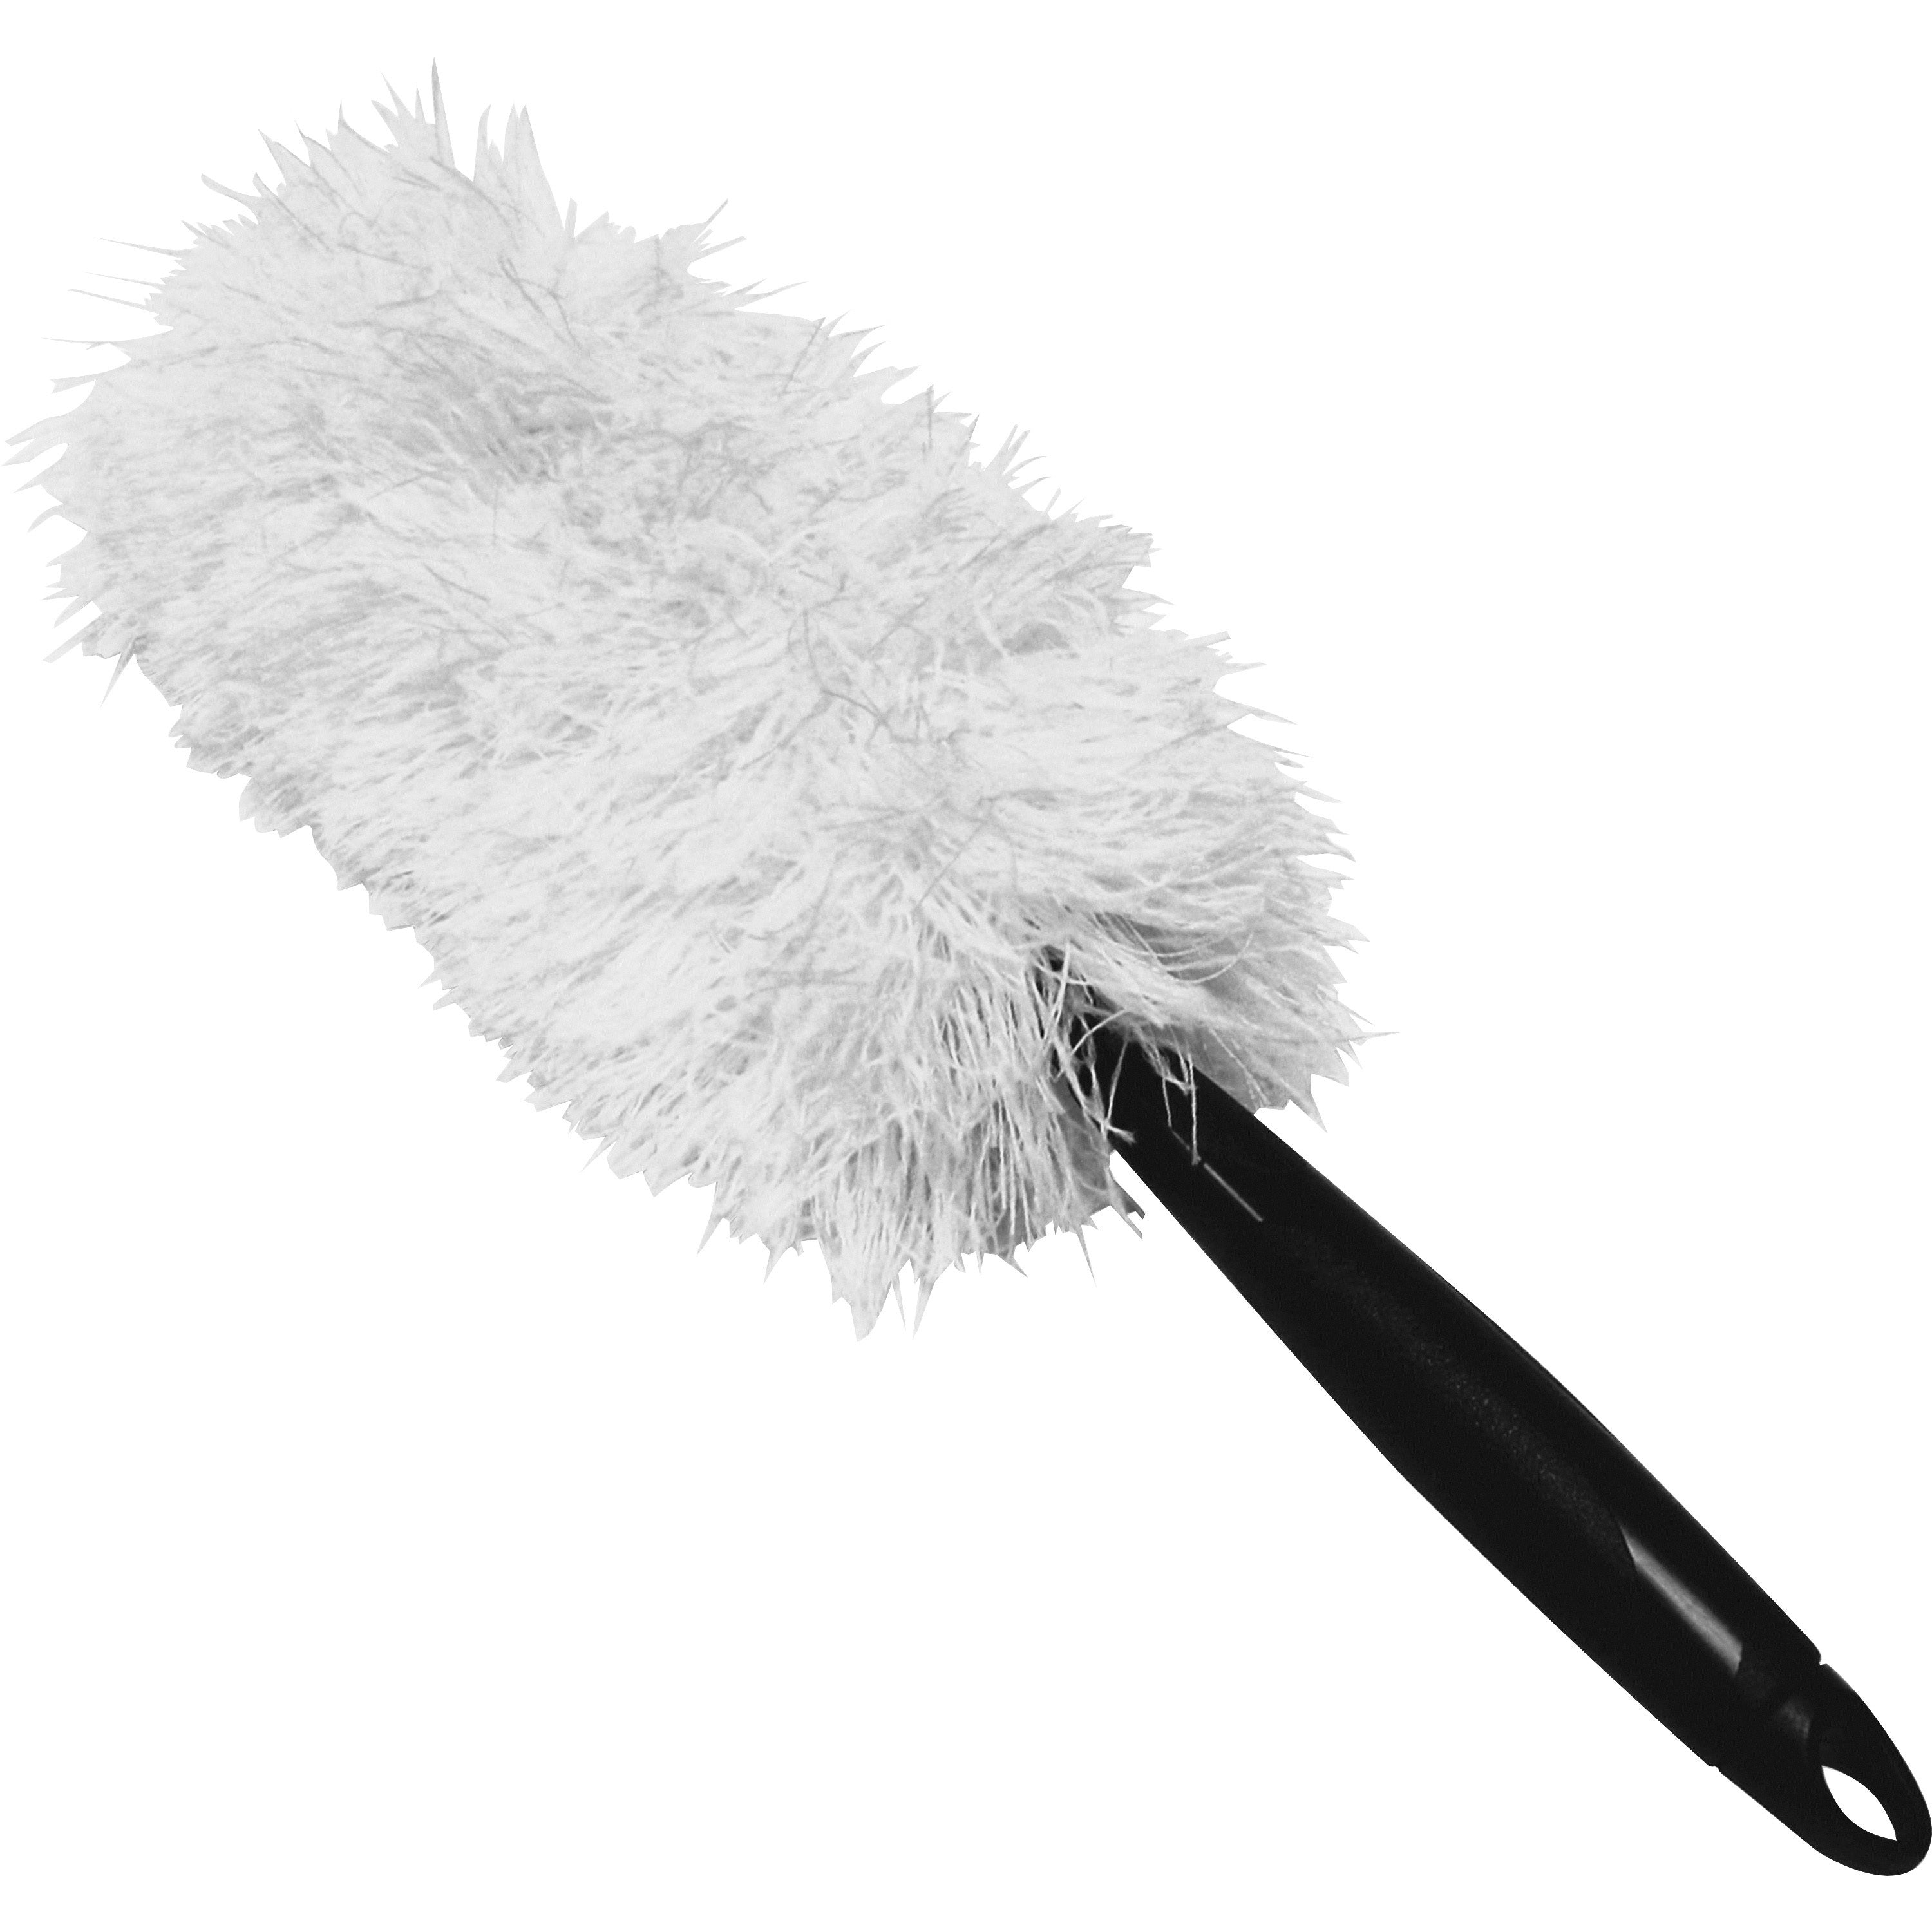 genuine-joe-microfiber-handheld-duster-863-handle-length-178-overall-length-1-each-white-black_gjo90112 - 1